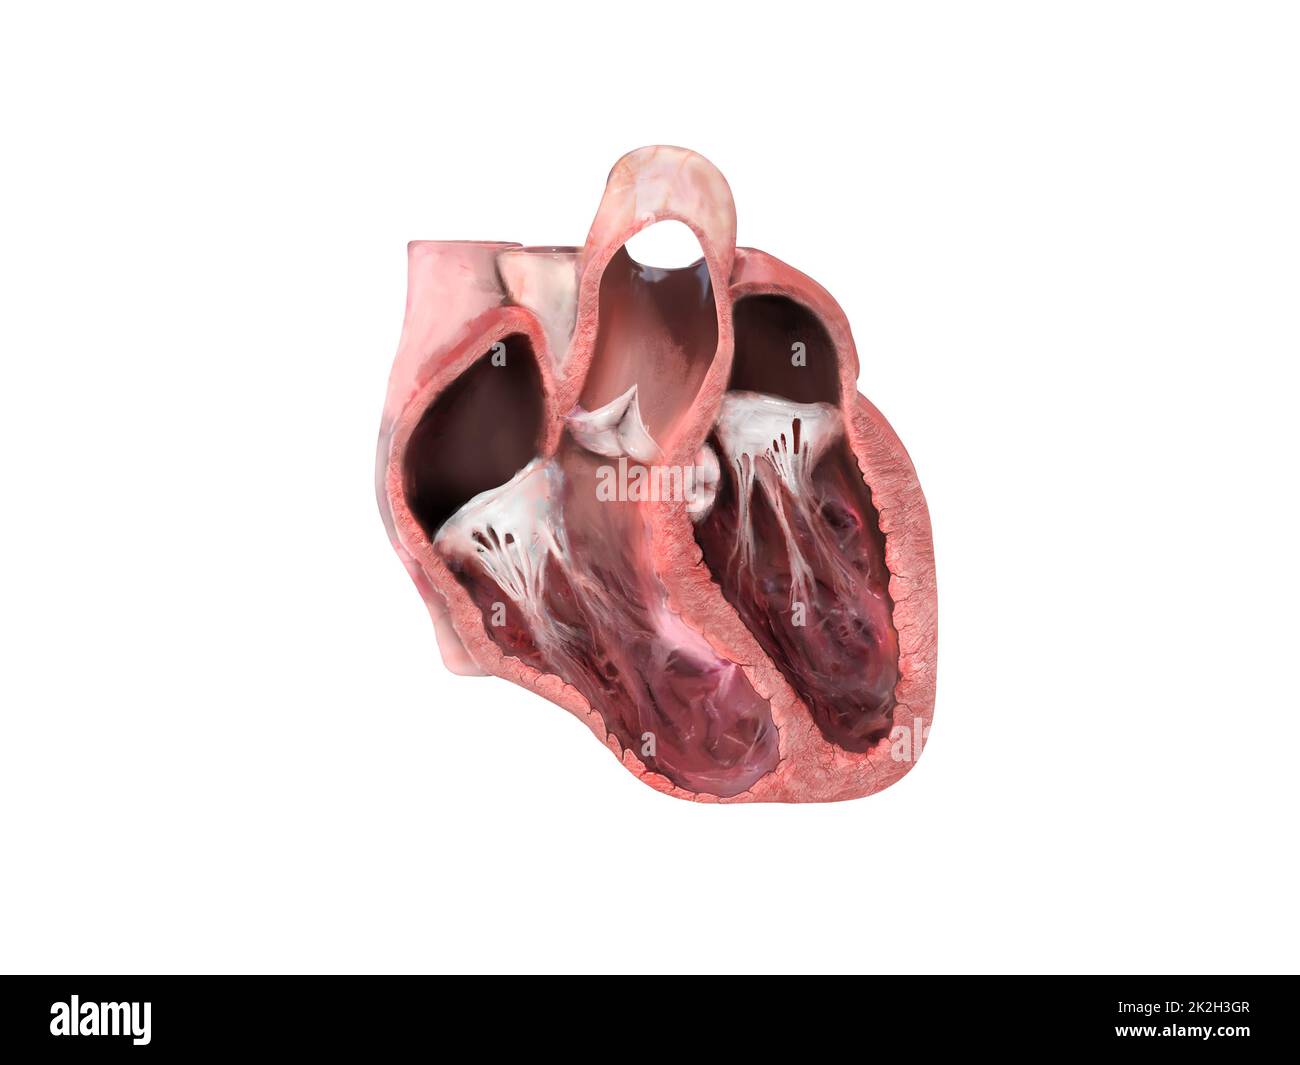 Anatomia del cuore, aneurisma ventricolare sinistro, rigonfiamento della parete, danno transmurale, si sviluppa aneurisma, dislocazione, formazione di aneurismi, paziente a rischio, rottura, trombo, embolia Foto Stock